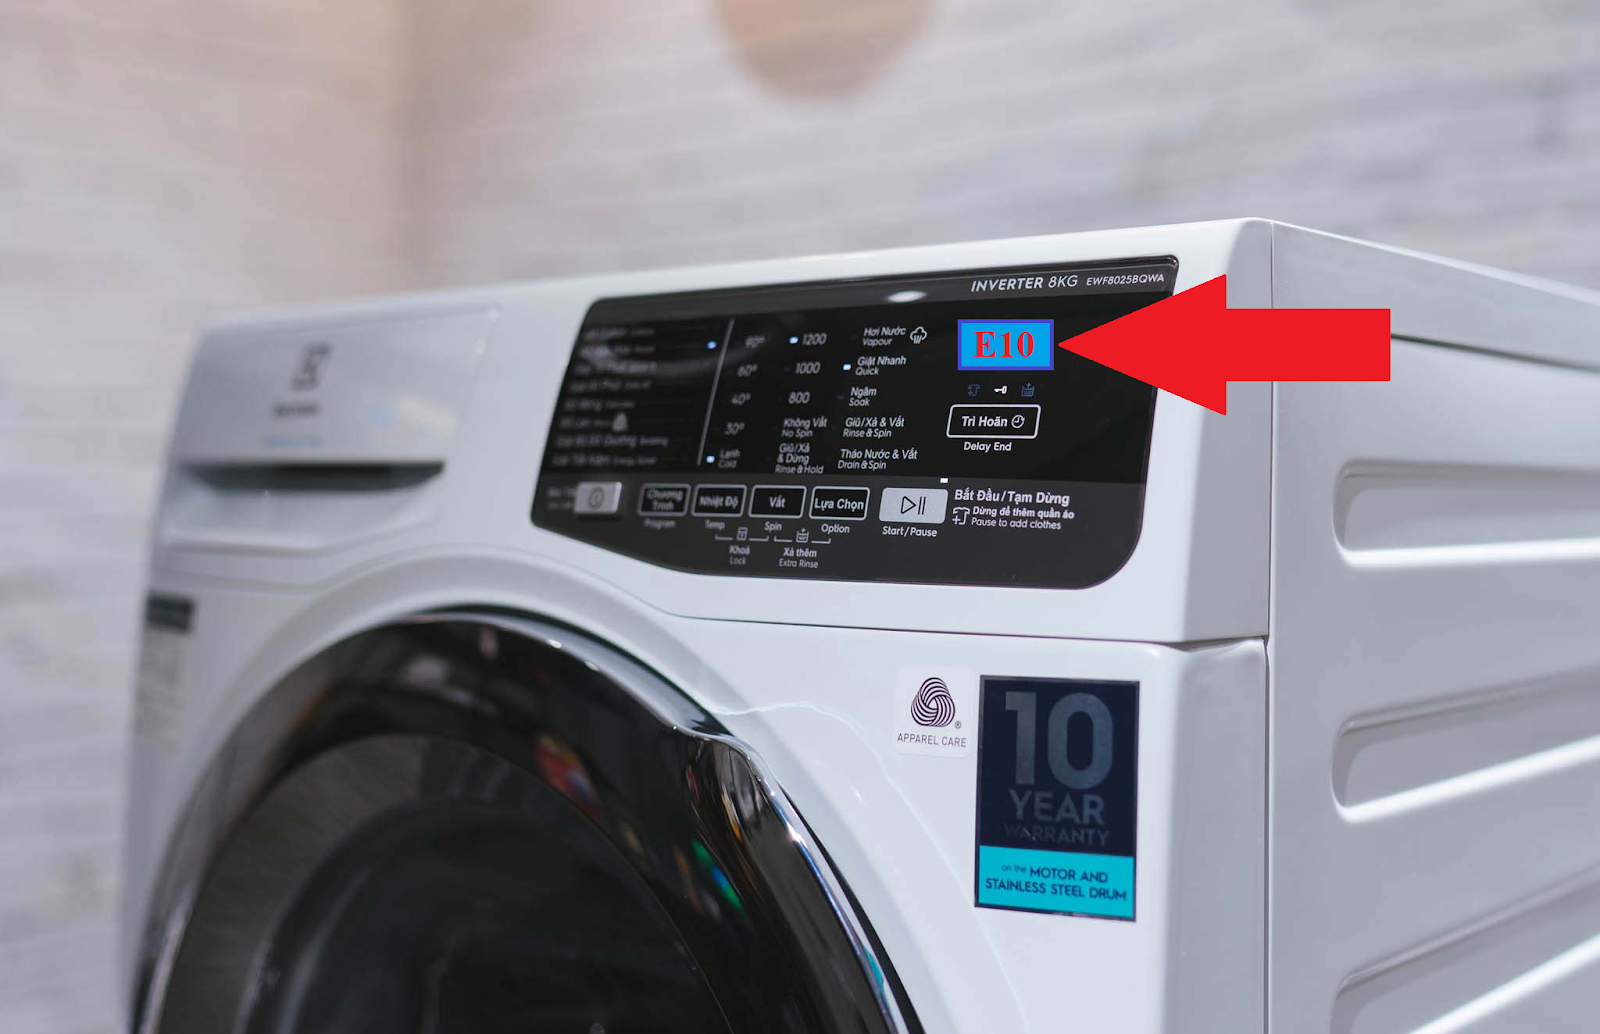 Khi máy giặt Electrolux gặp sự cố báo lỗi E10, trên màn hình máy xuất hiện biểu tượng này